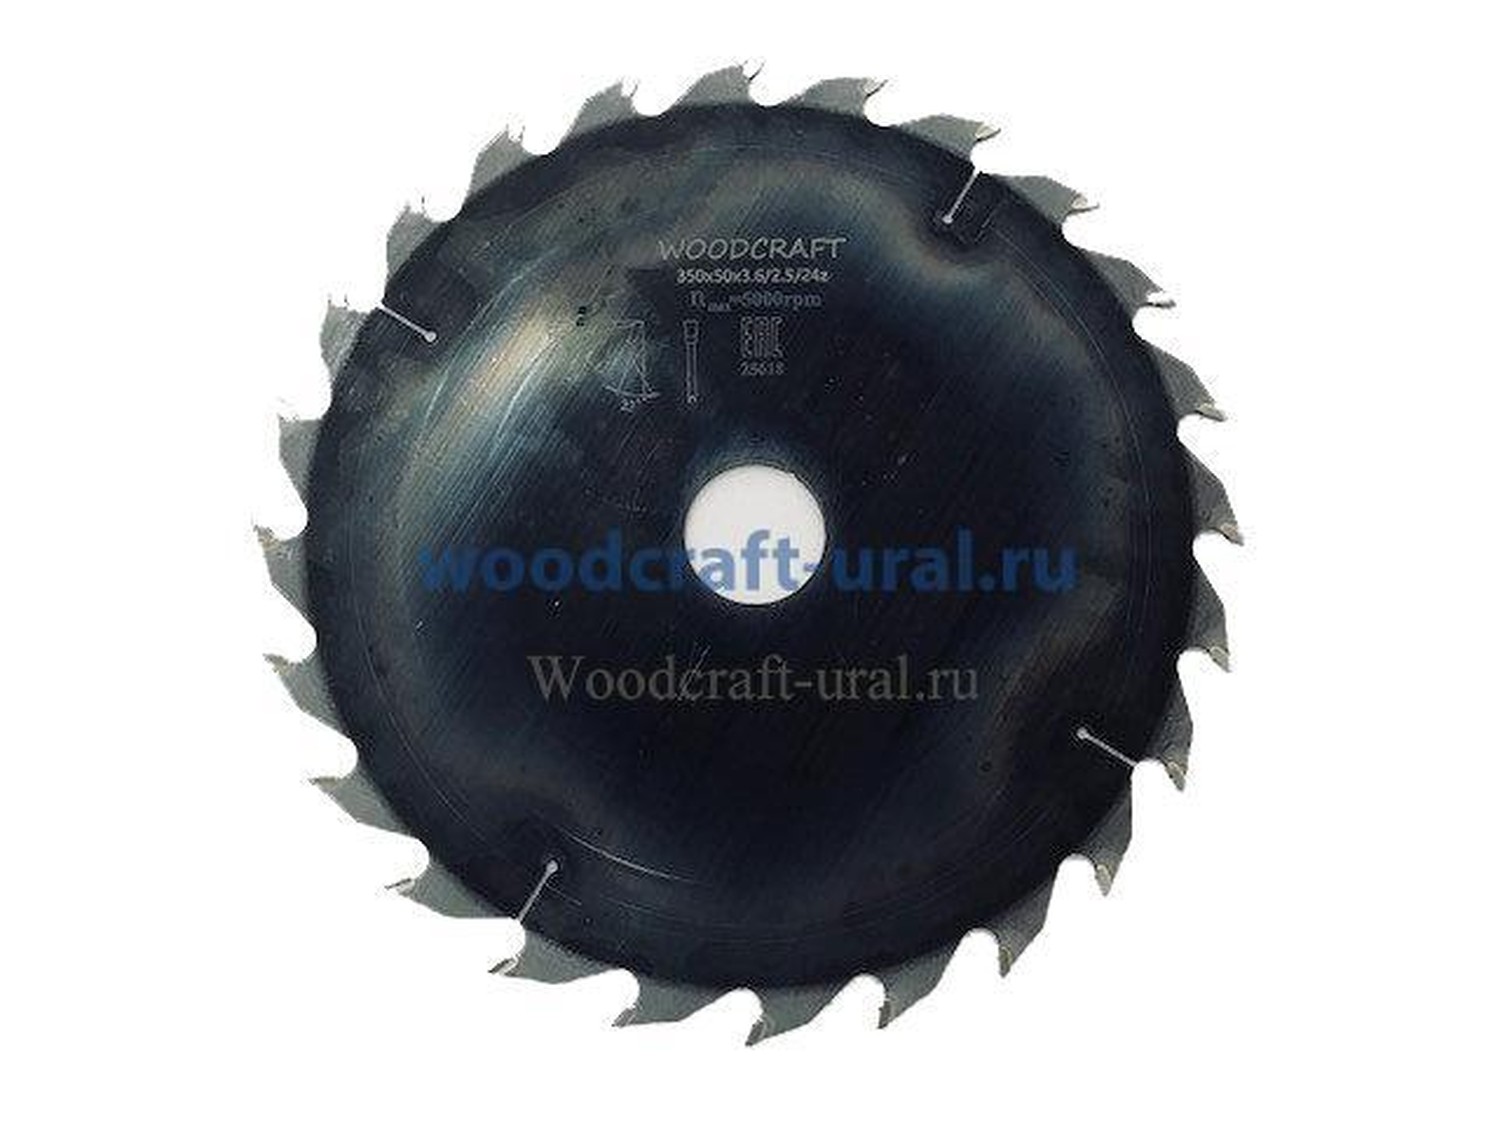 Дисковые пилы woodcraft для продольной распиловки (кромкообрезные) 